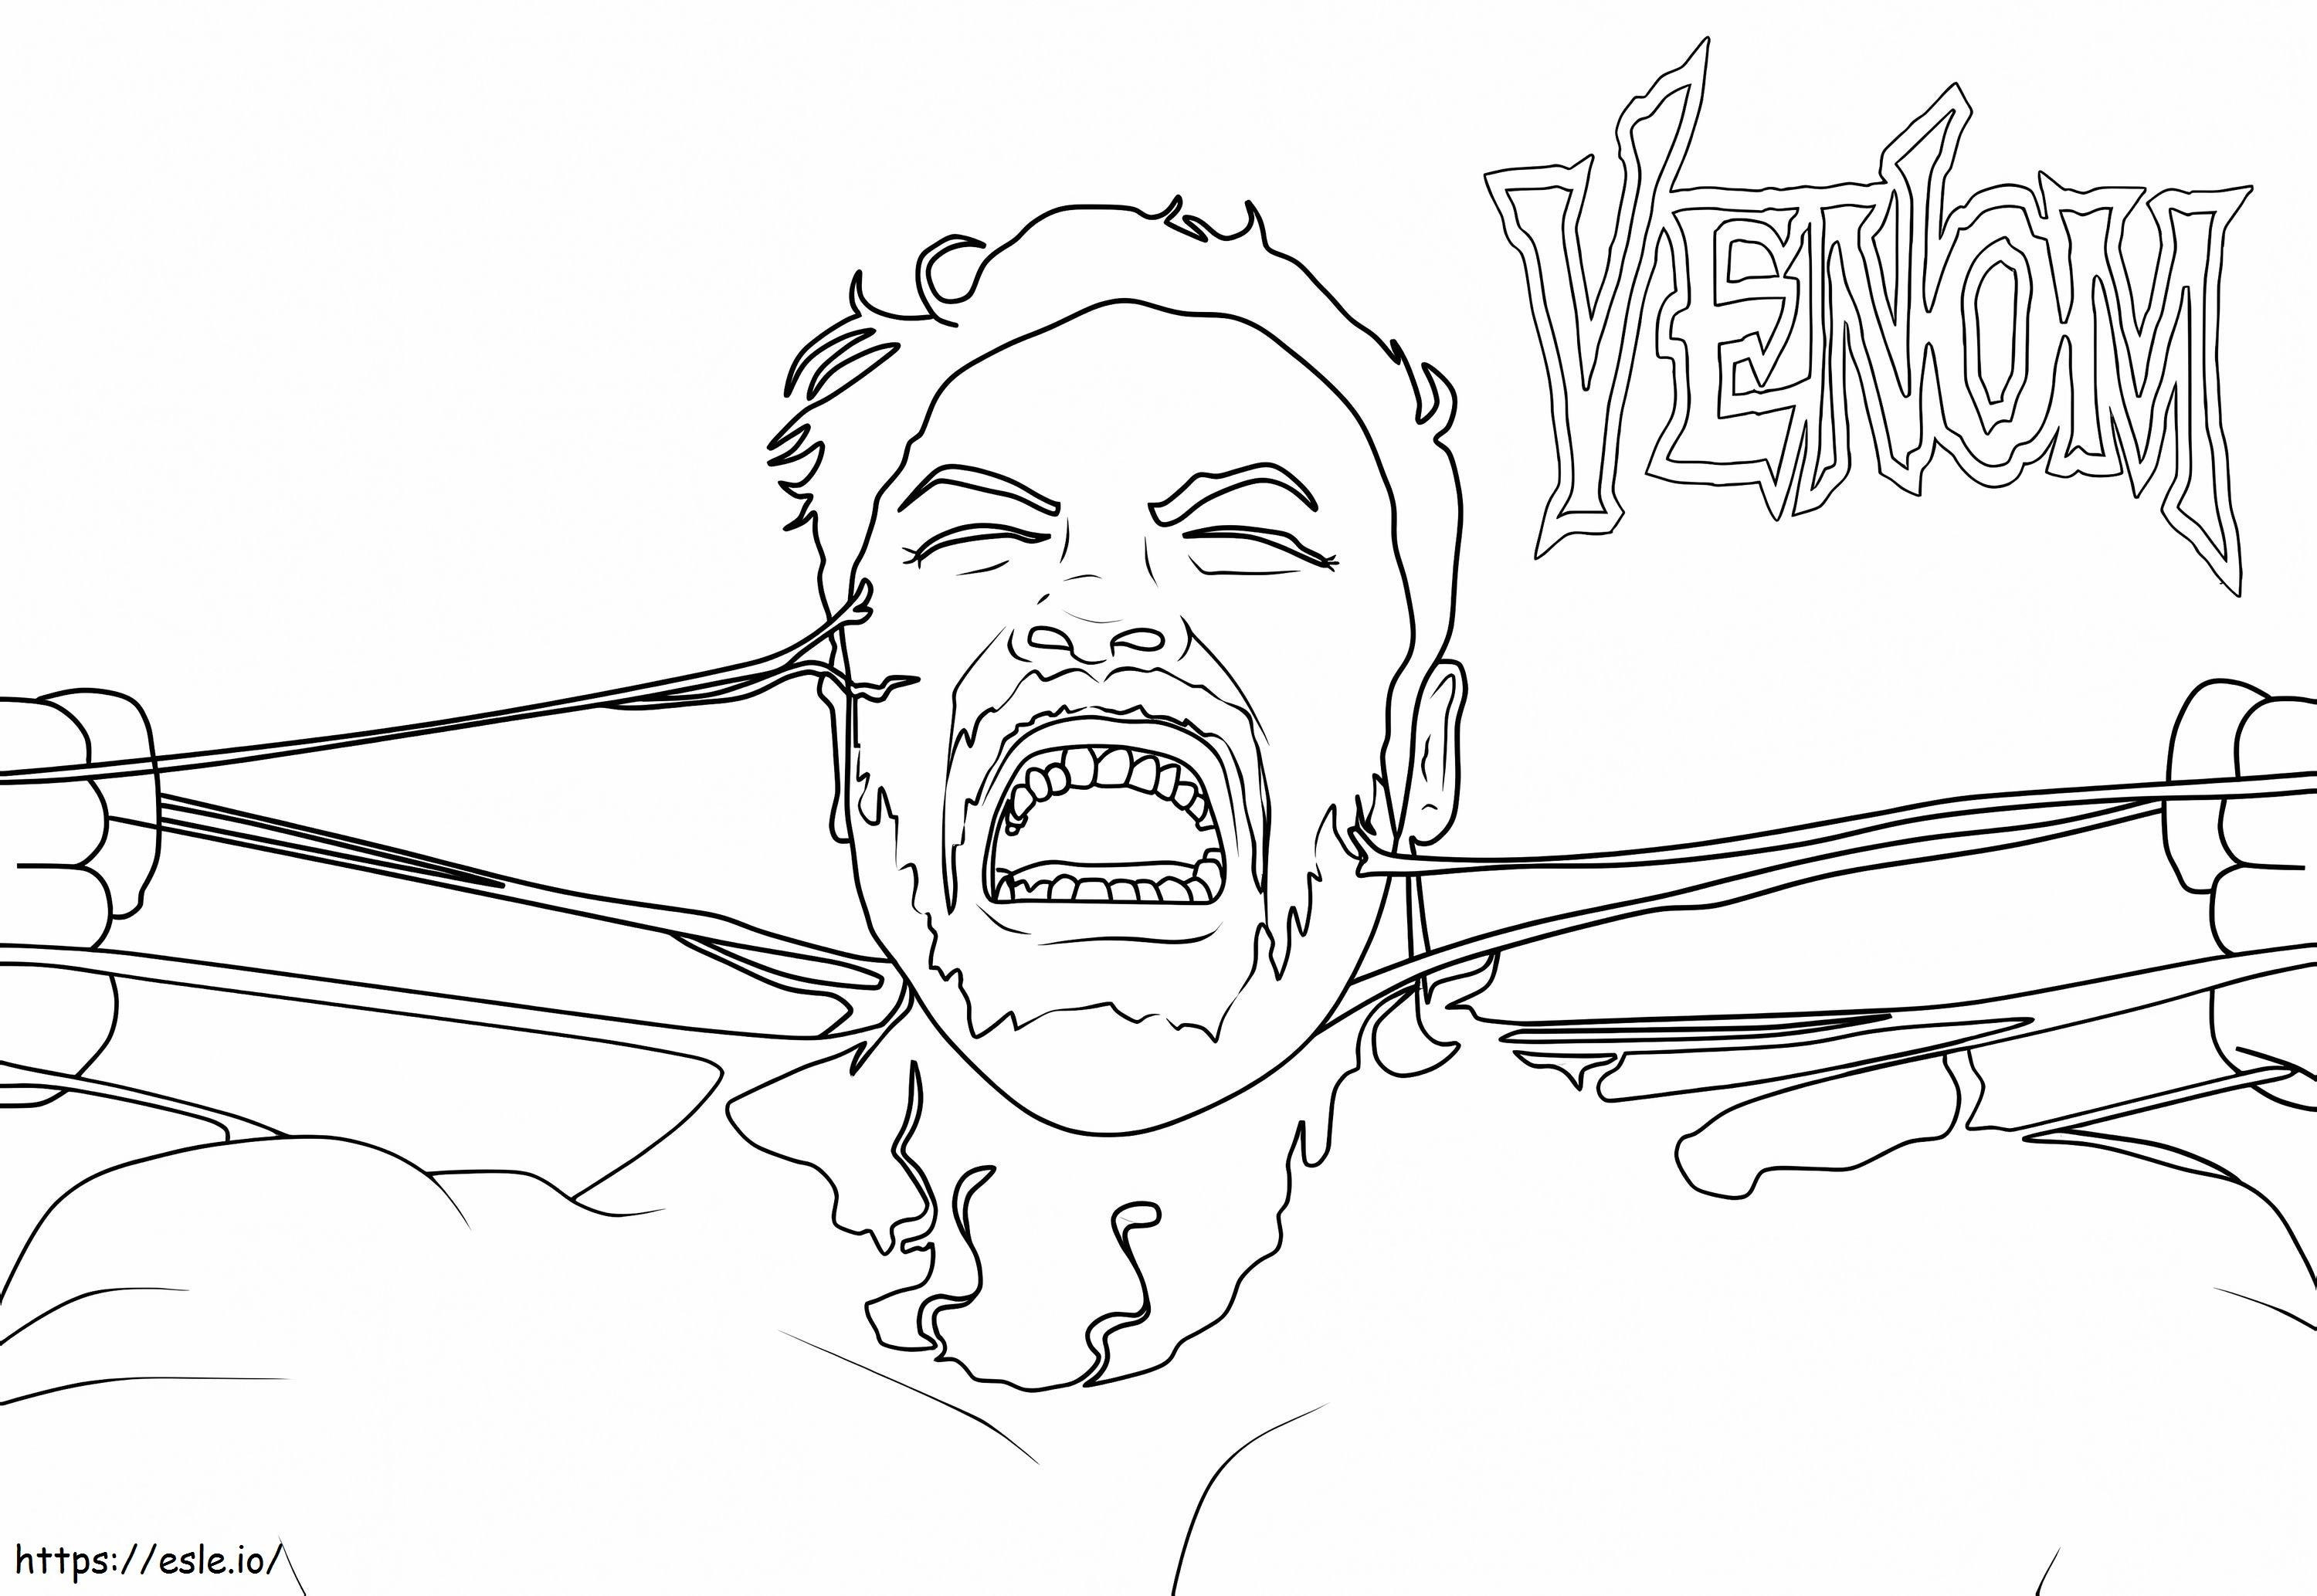 Eddie Venom coloring page